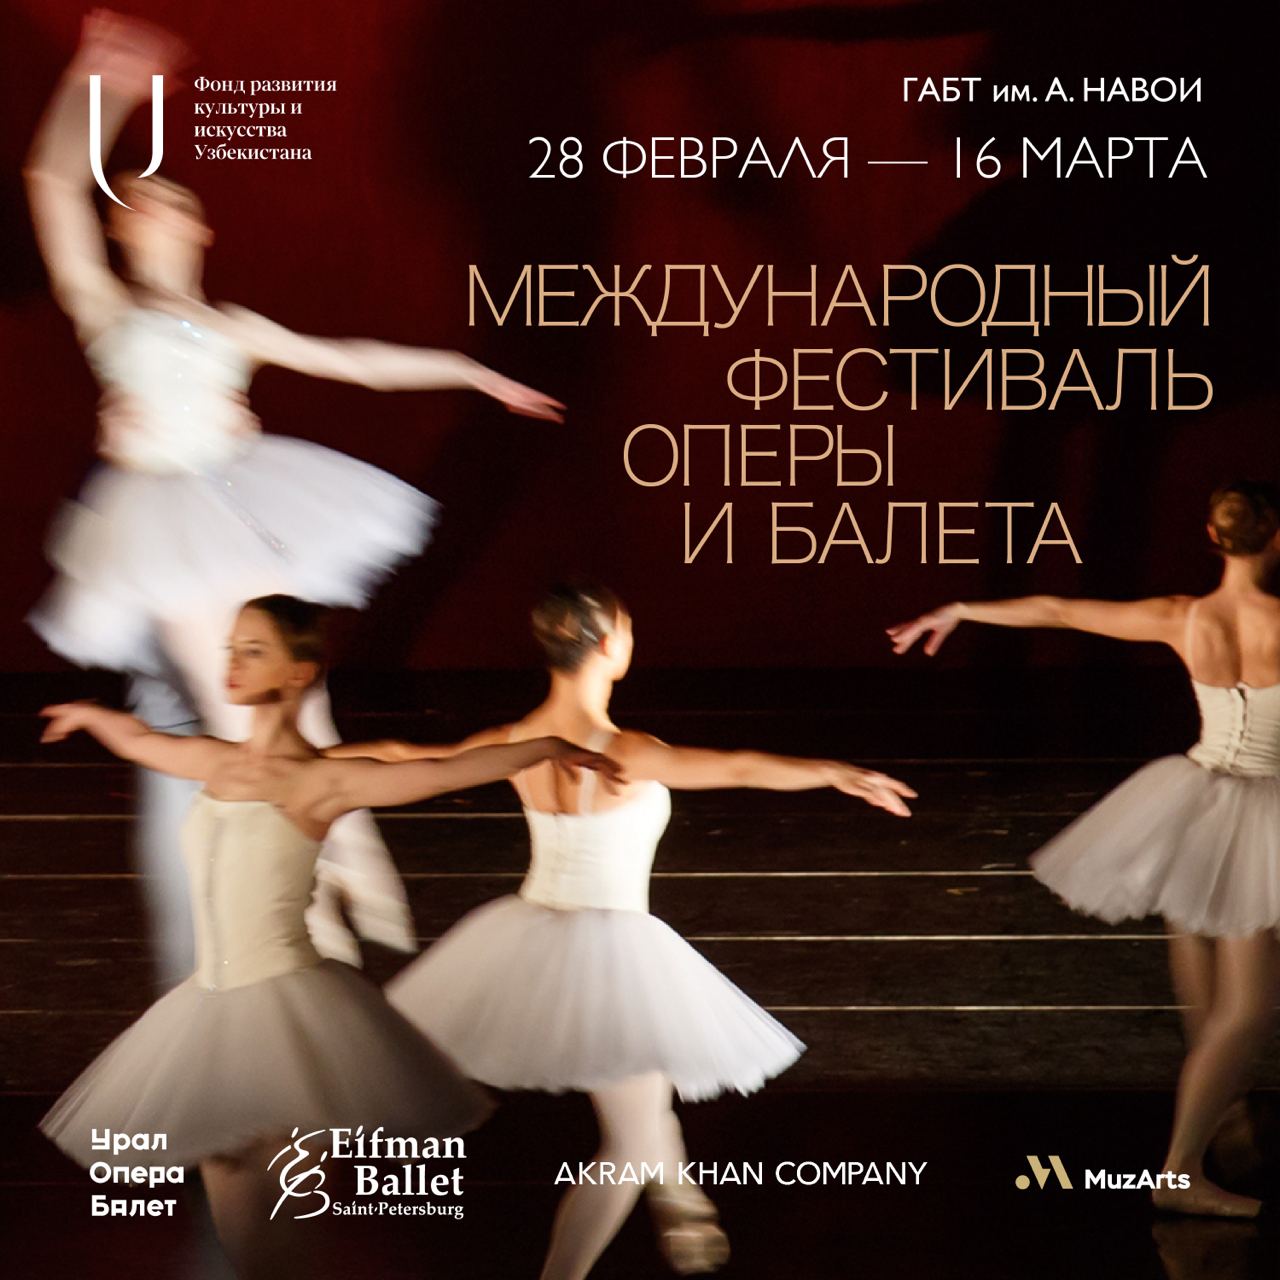 v-tashkente-v-programme-mezhdunarodnogo-festivalya-opery-i-baleta-budut-predstavleny-postanovki-veduschih-mirovyh-postanovschikov